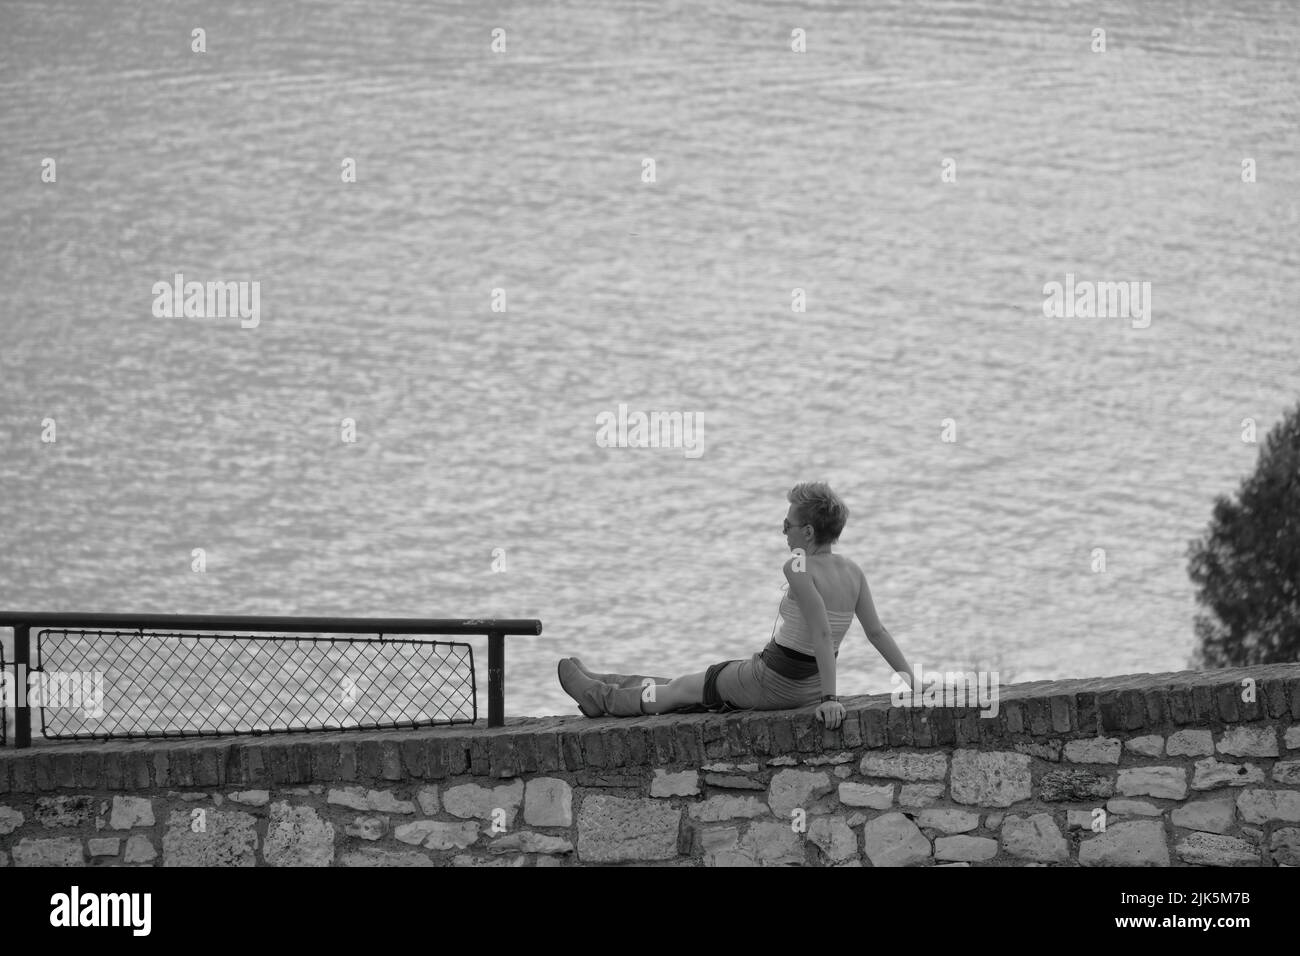 Fotografía en blanco y negro de una mujer joven que se relaja en el parque Kalemegdan de Belgrado, sobre el fondo las aguas del Danubio o la confluencia de los ríos Sava, Serbia Foto de stock